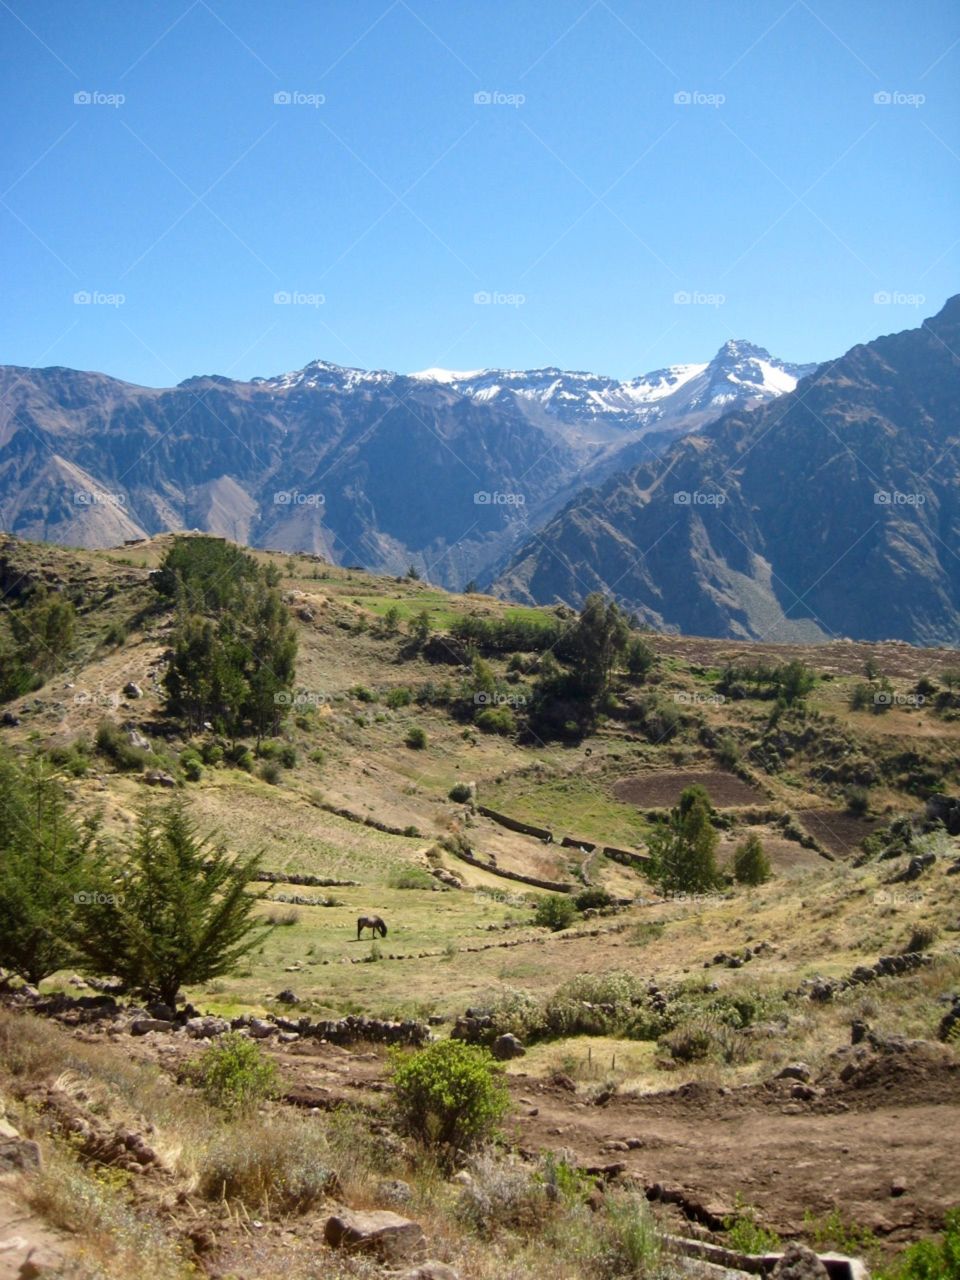 Hiking Peru Mountains 